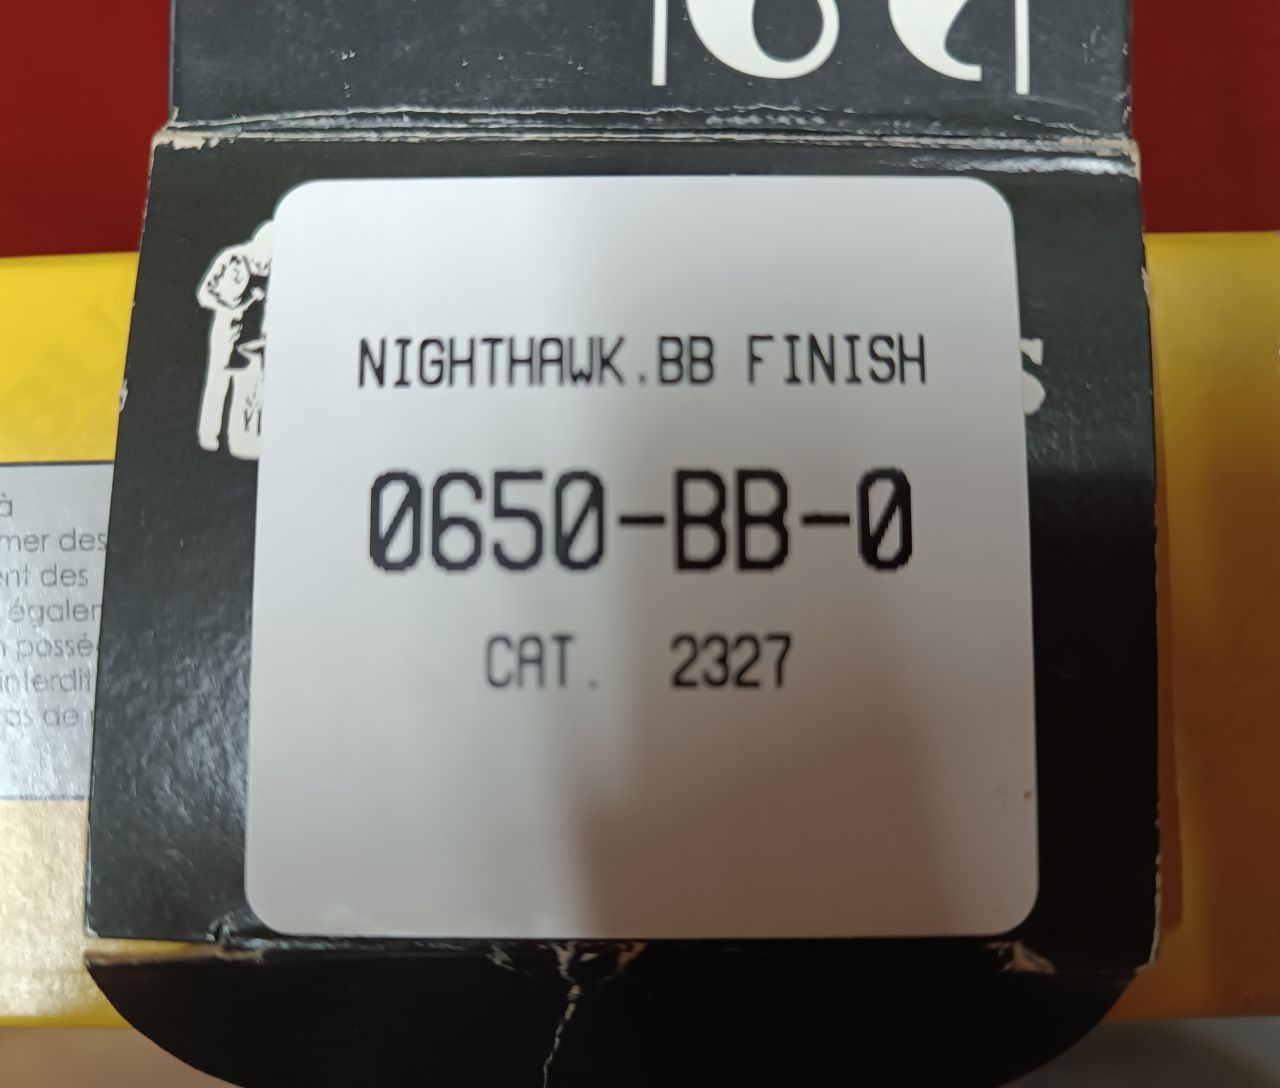 BUCK Nighthawk BB Finisch Cat. 2327